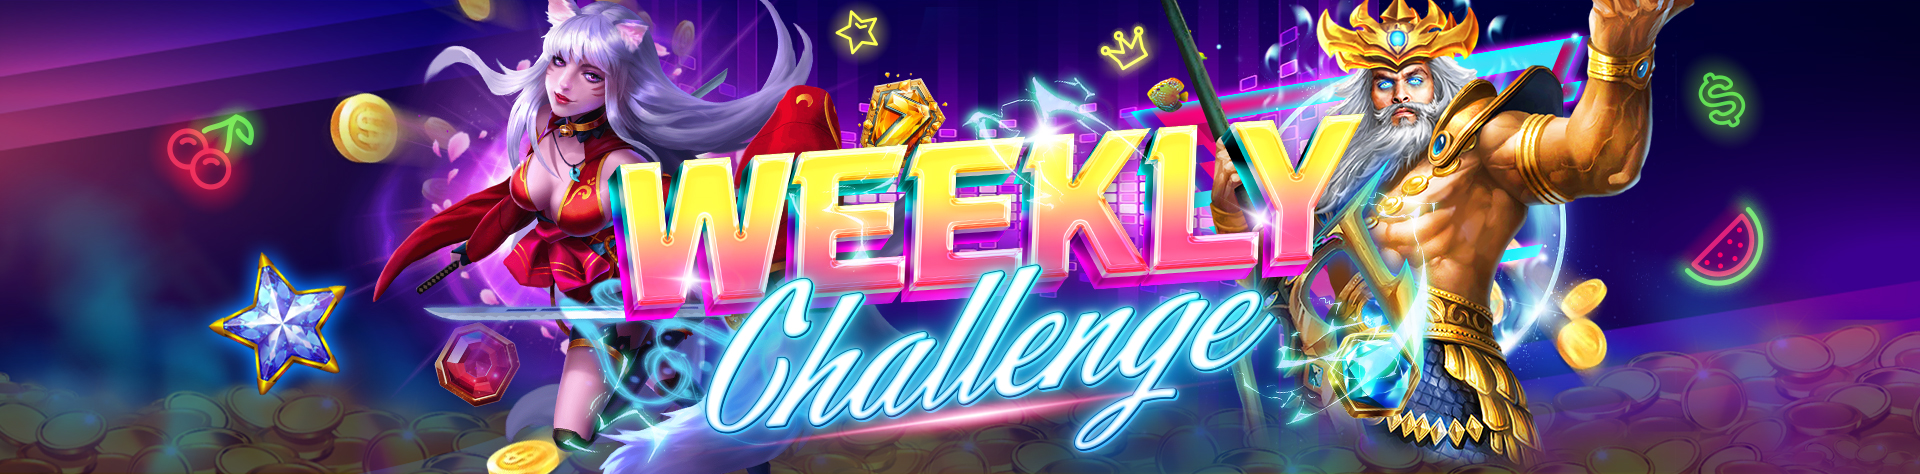 U9play Weekly challenge